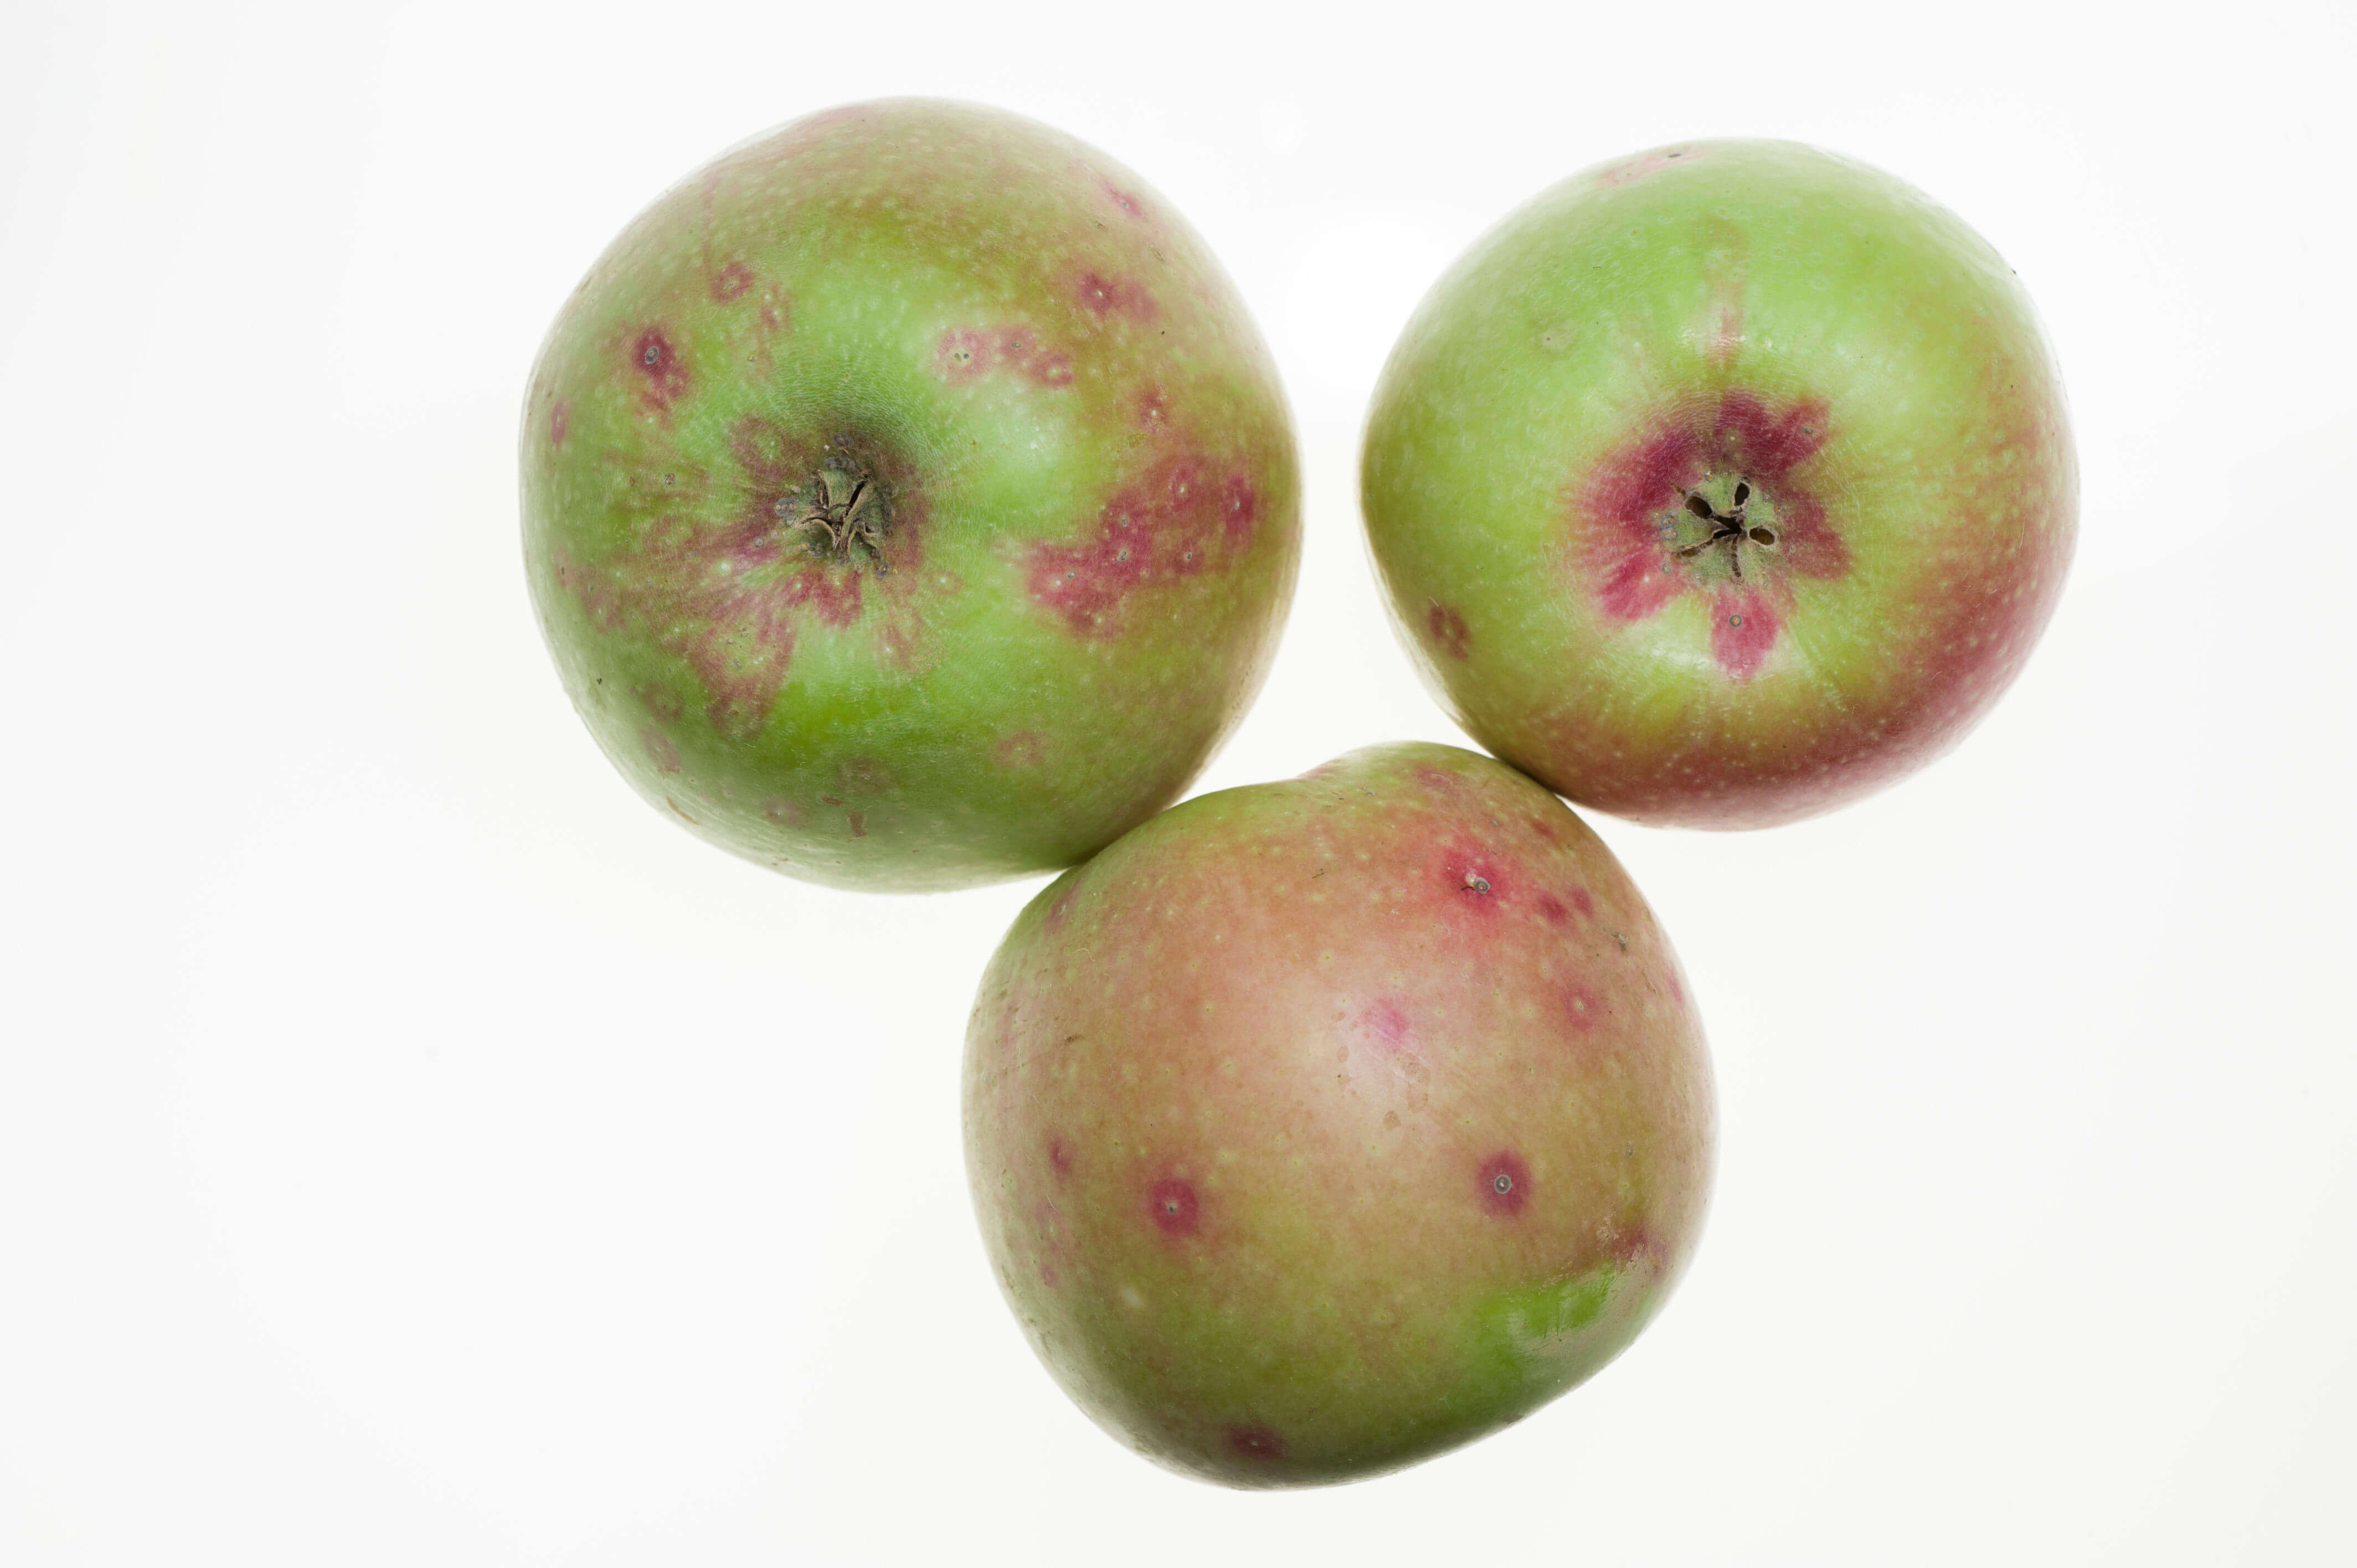 Fruct (măr) cu atac de păduche din San José 